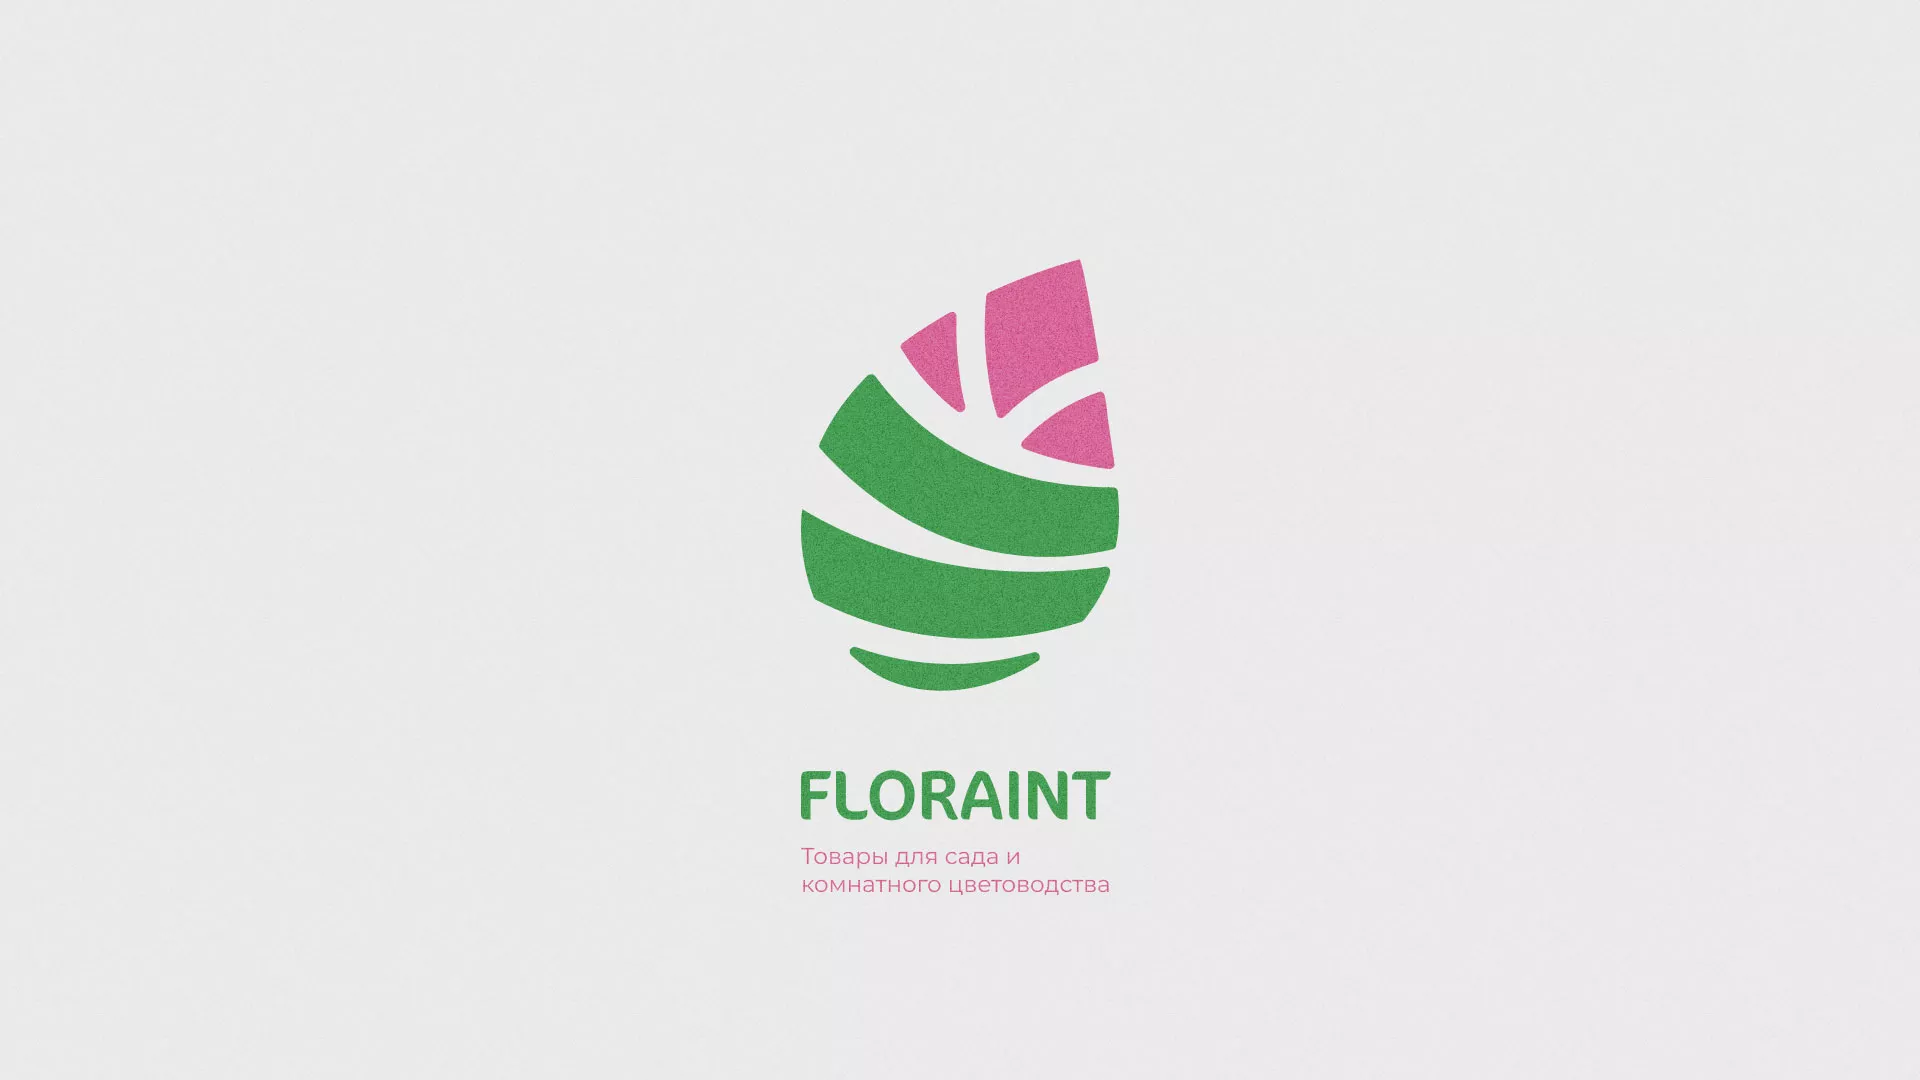 Разработка оформления профиля Instagram для магазина «Floraint» в Островном